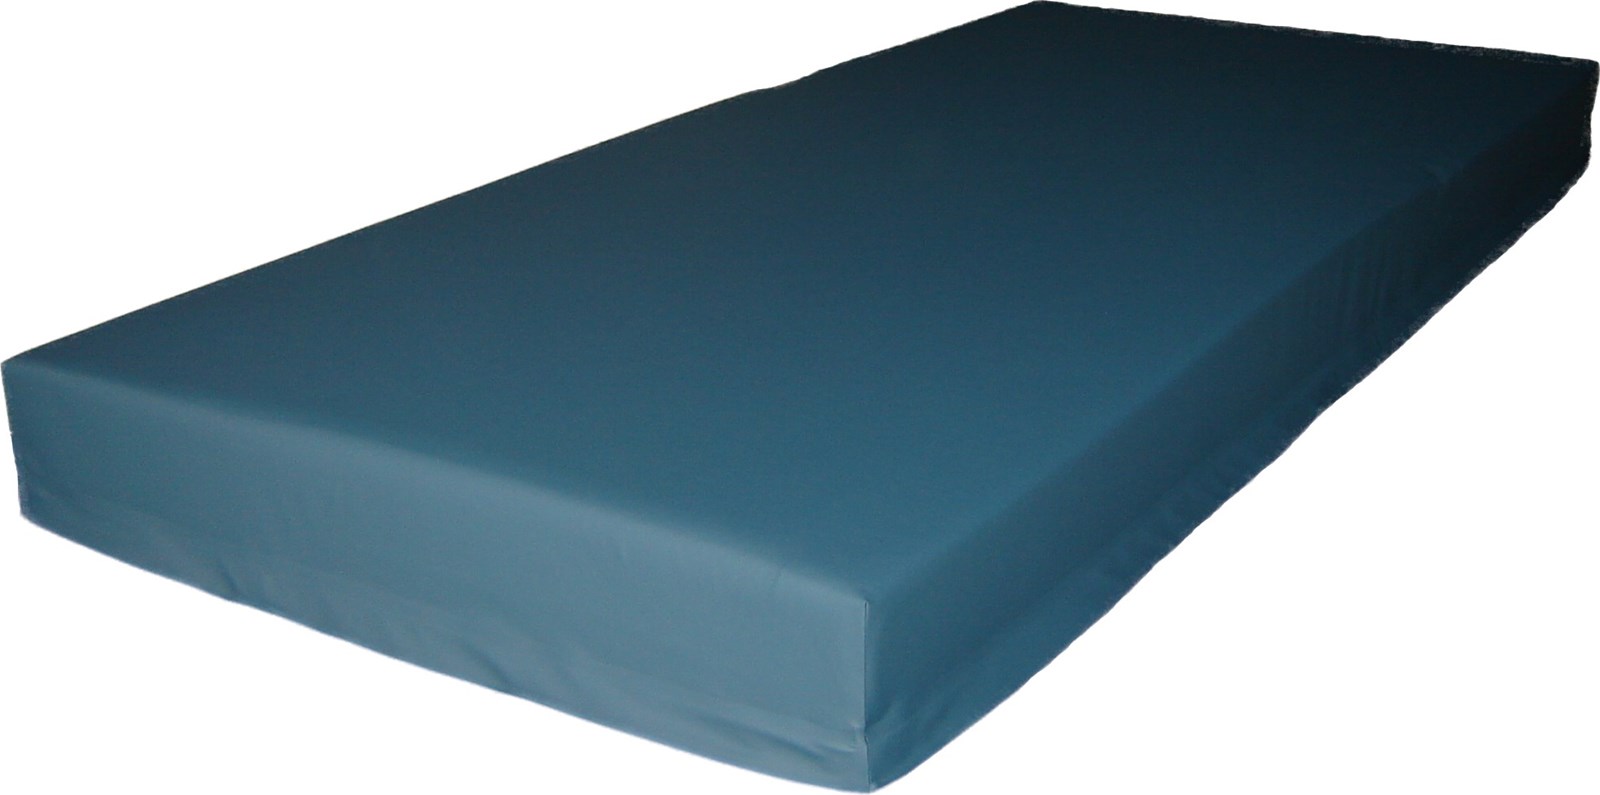 vinyl center mattress protector zippered